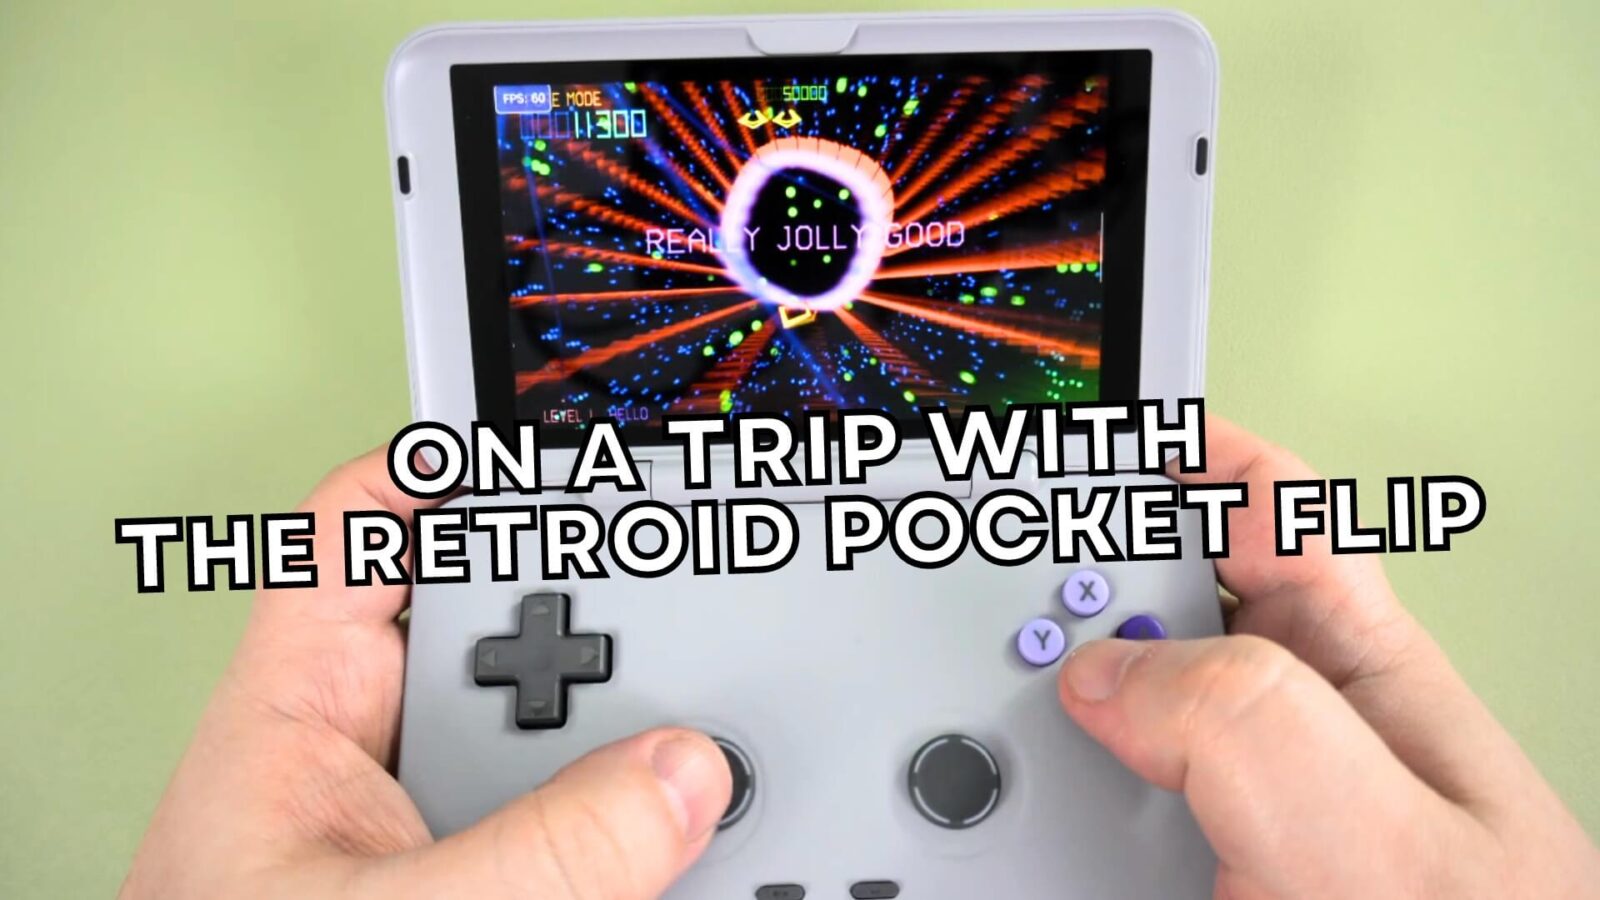 Retroid Pocket Flip